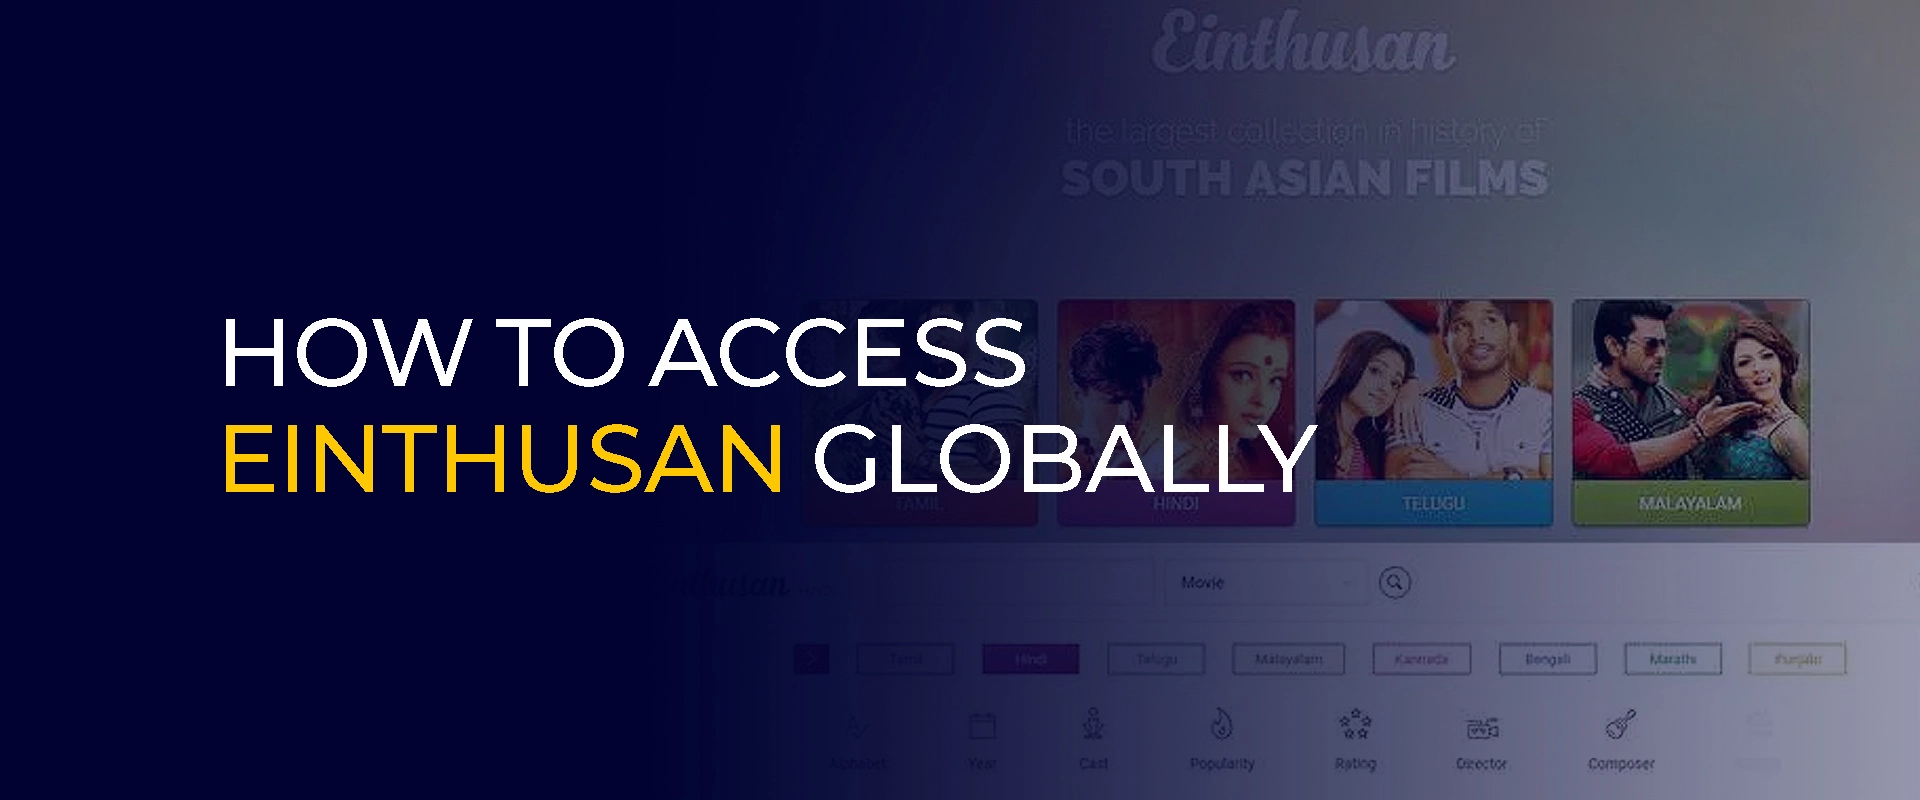 نحوه دسترسی به Einthusan در سطح جهانی